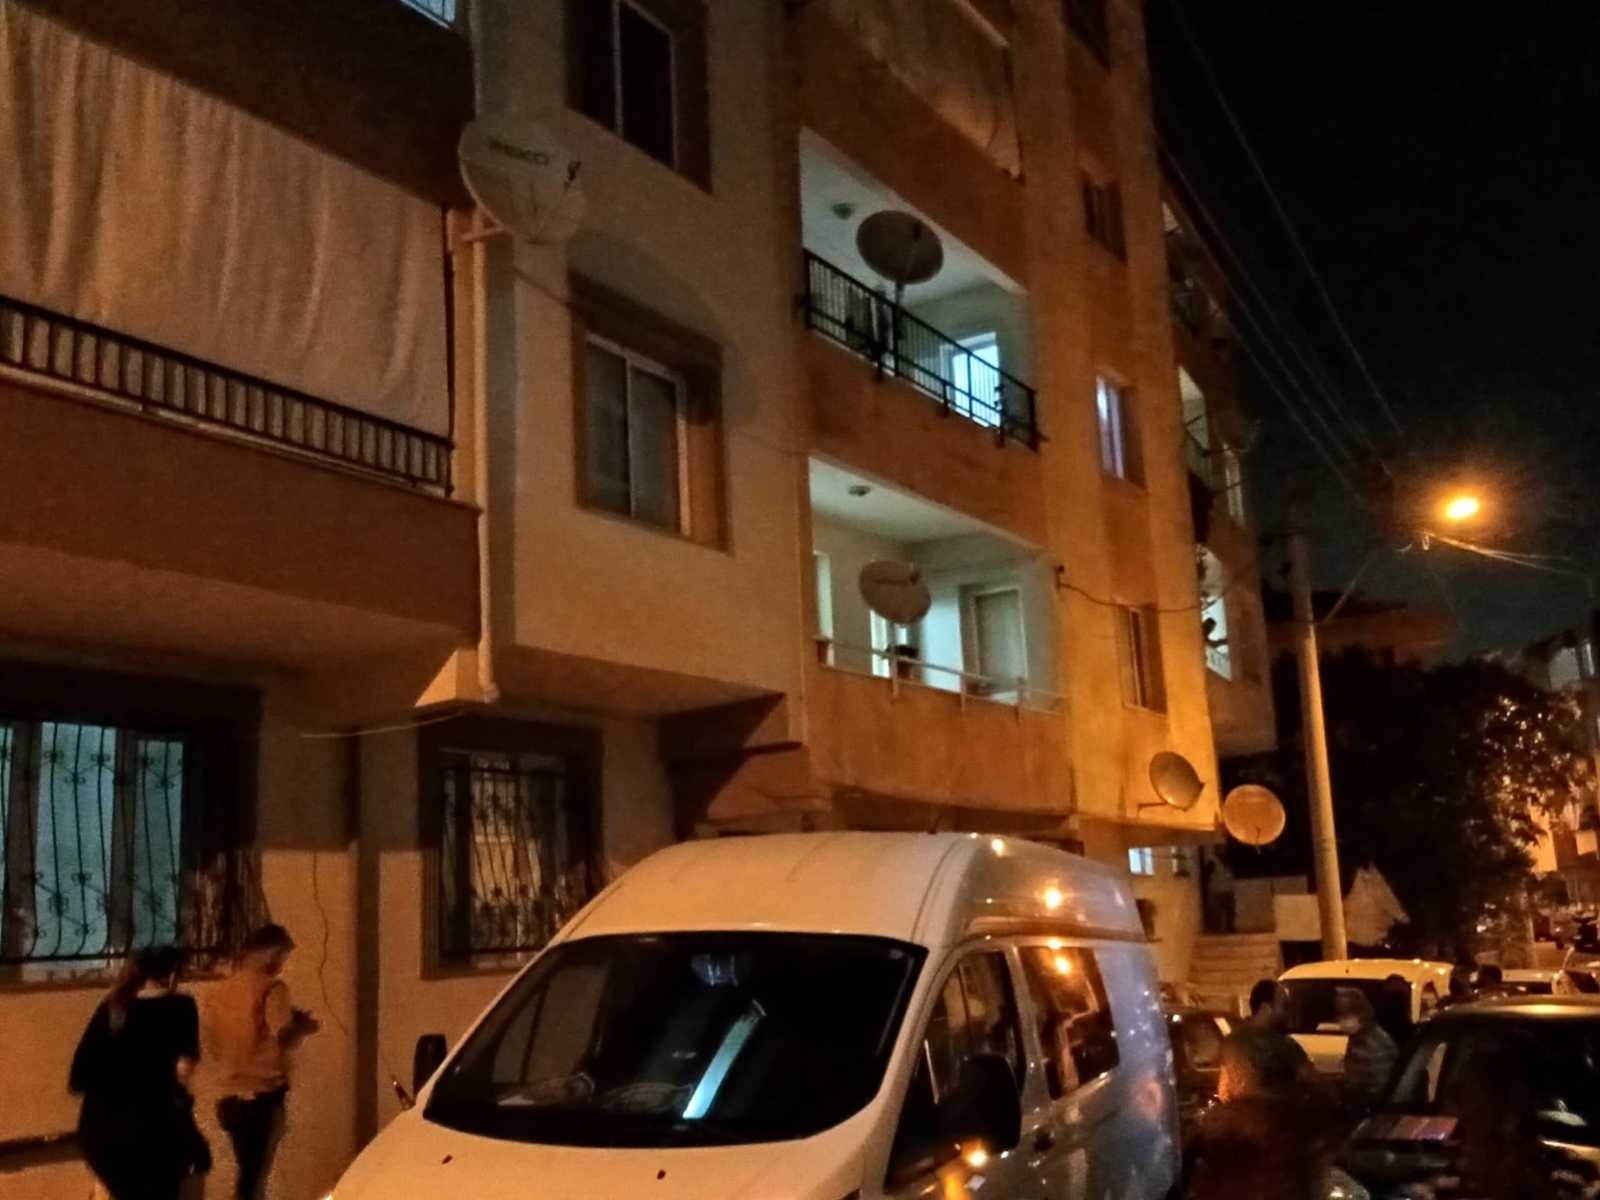 İzmir’de tartışma sonrası bir erkeği bıçaklayarak öldüren kadın tutuklandı #izmir